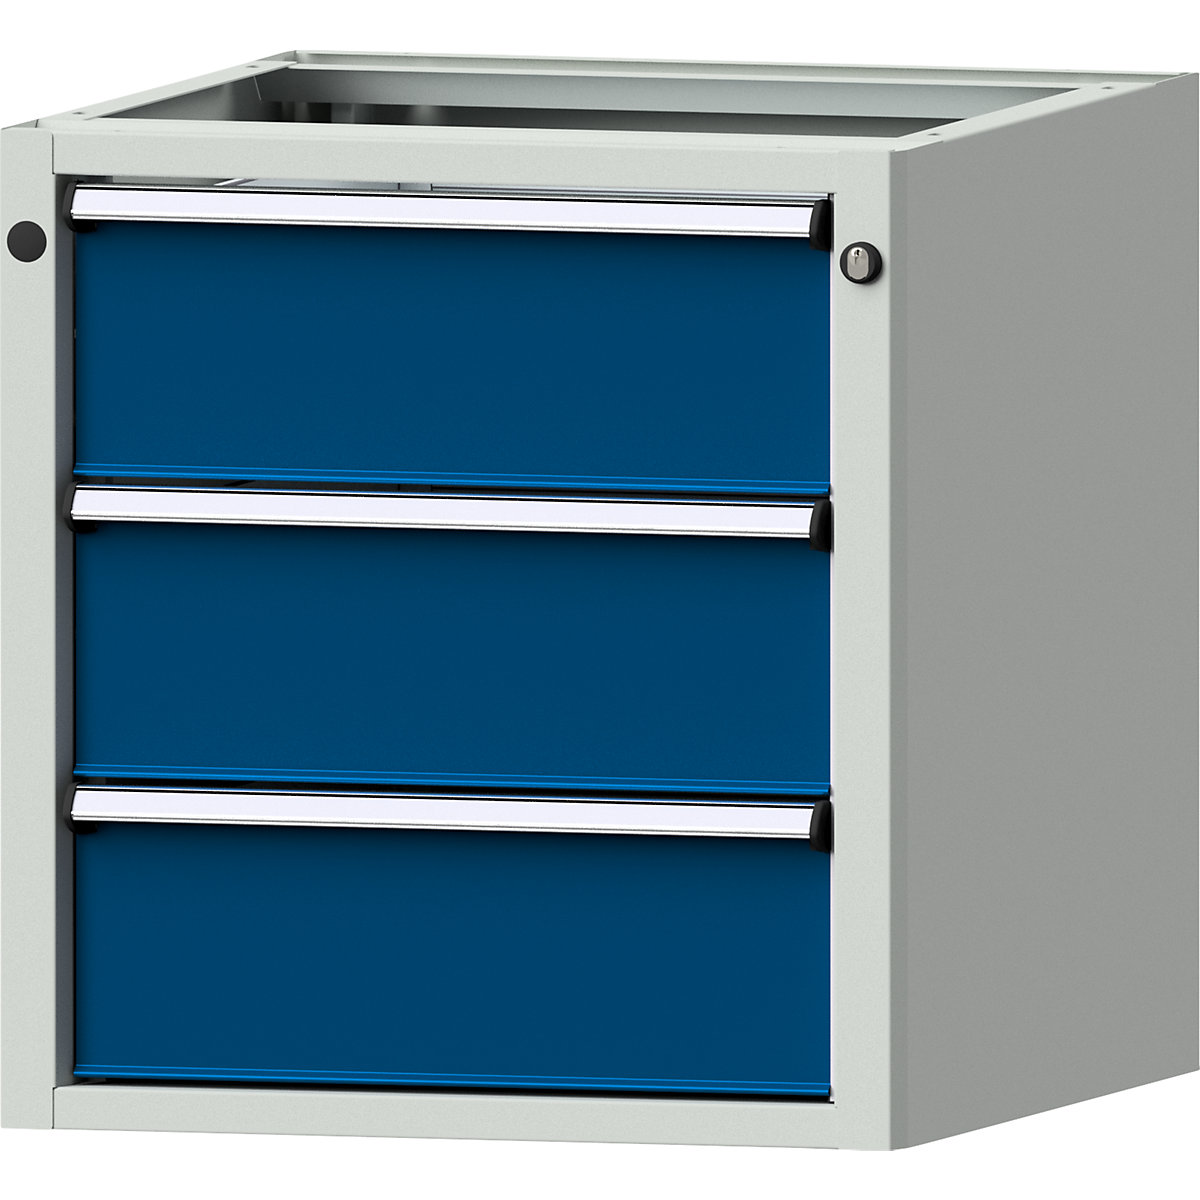 Podstavná skříňka pro pracovní stoly s elektrickým přestavováním výšky LIFT – ANKE, š x h 570 x 615 mm, výška 600 mm, 3 zásuvky (výška 180 mm)-3